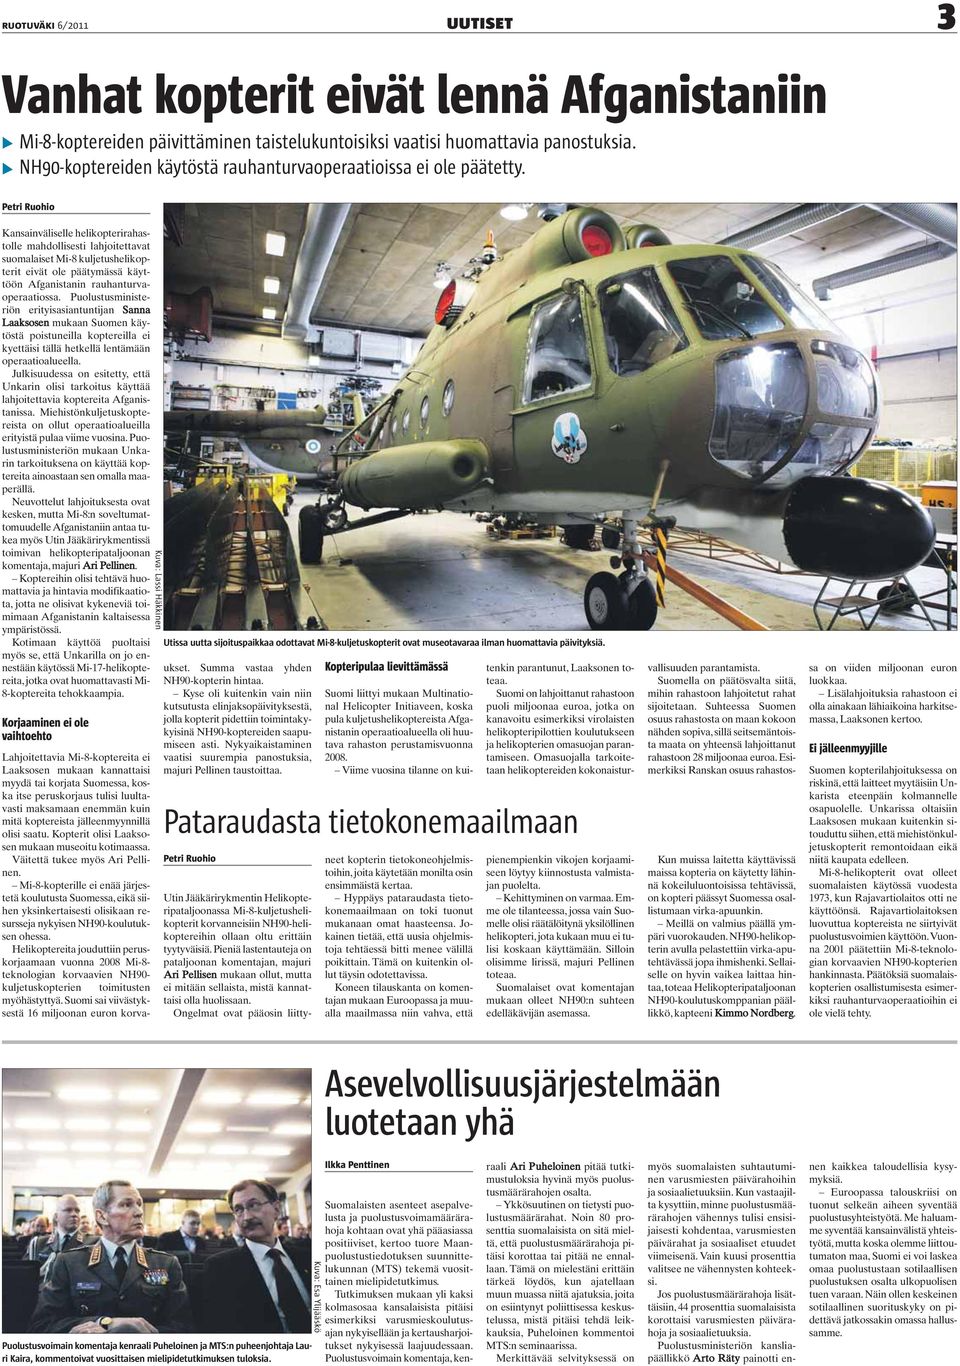 Petri Ruohio Kansainväliselle helikopterirahastolle mahdollisesti lahjoitettavat suomalaiset Mi-8 kuljetushelikopterit eivät ole päätymässä käyttöön Afganistanin rauhanturvaoperaatiossa.